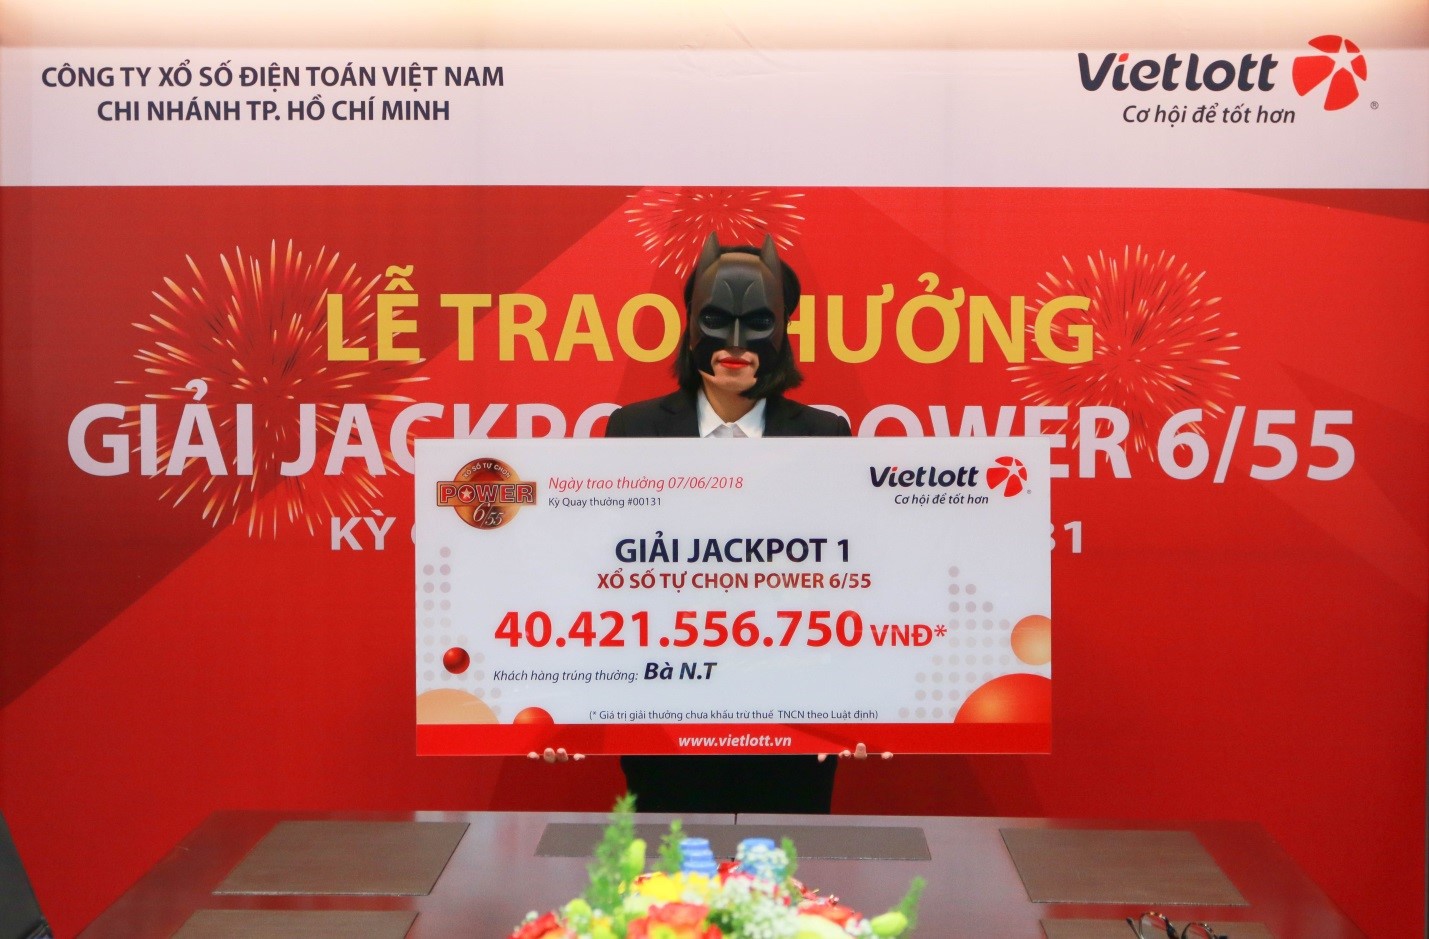 Chị N.T đeo mặt nạ nhận giải thưởng Vietlott 40 tỉ đồng